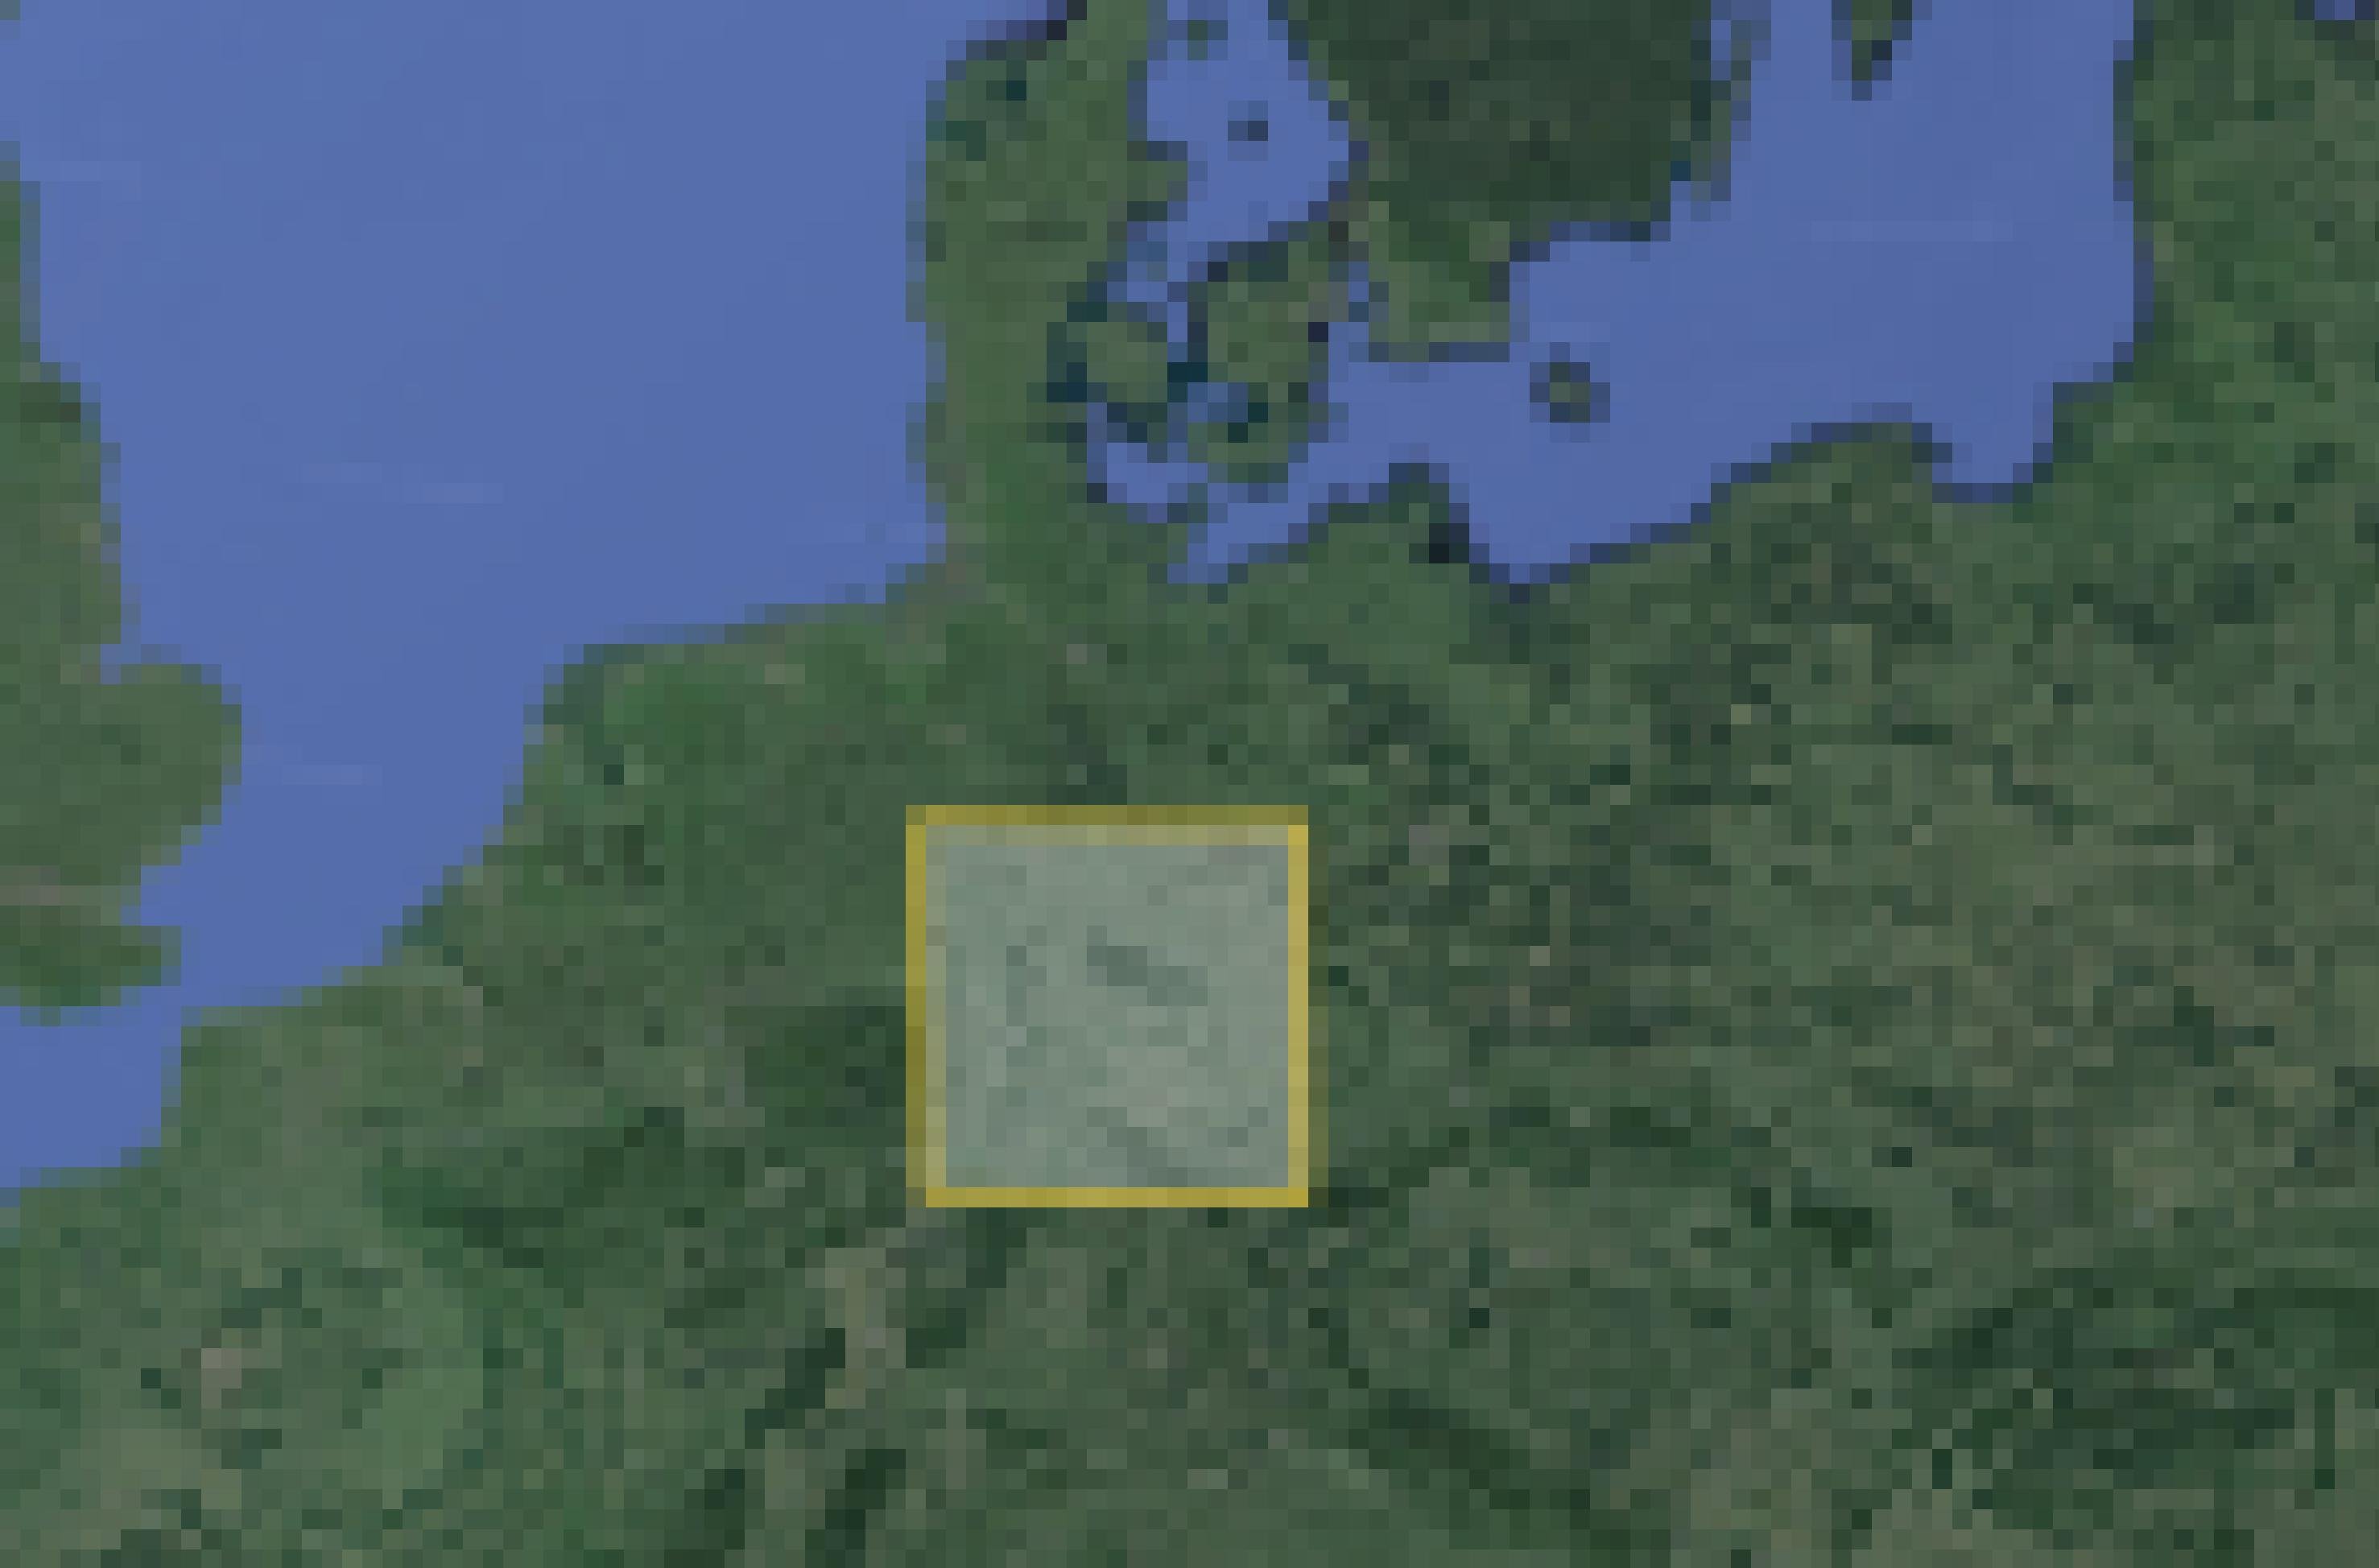 Karte von Deutschland. Mittig befindet sich ein Kasten, der die Gesamtfläche der Brände in Australien symbolisiert.